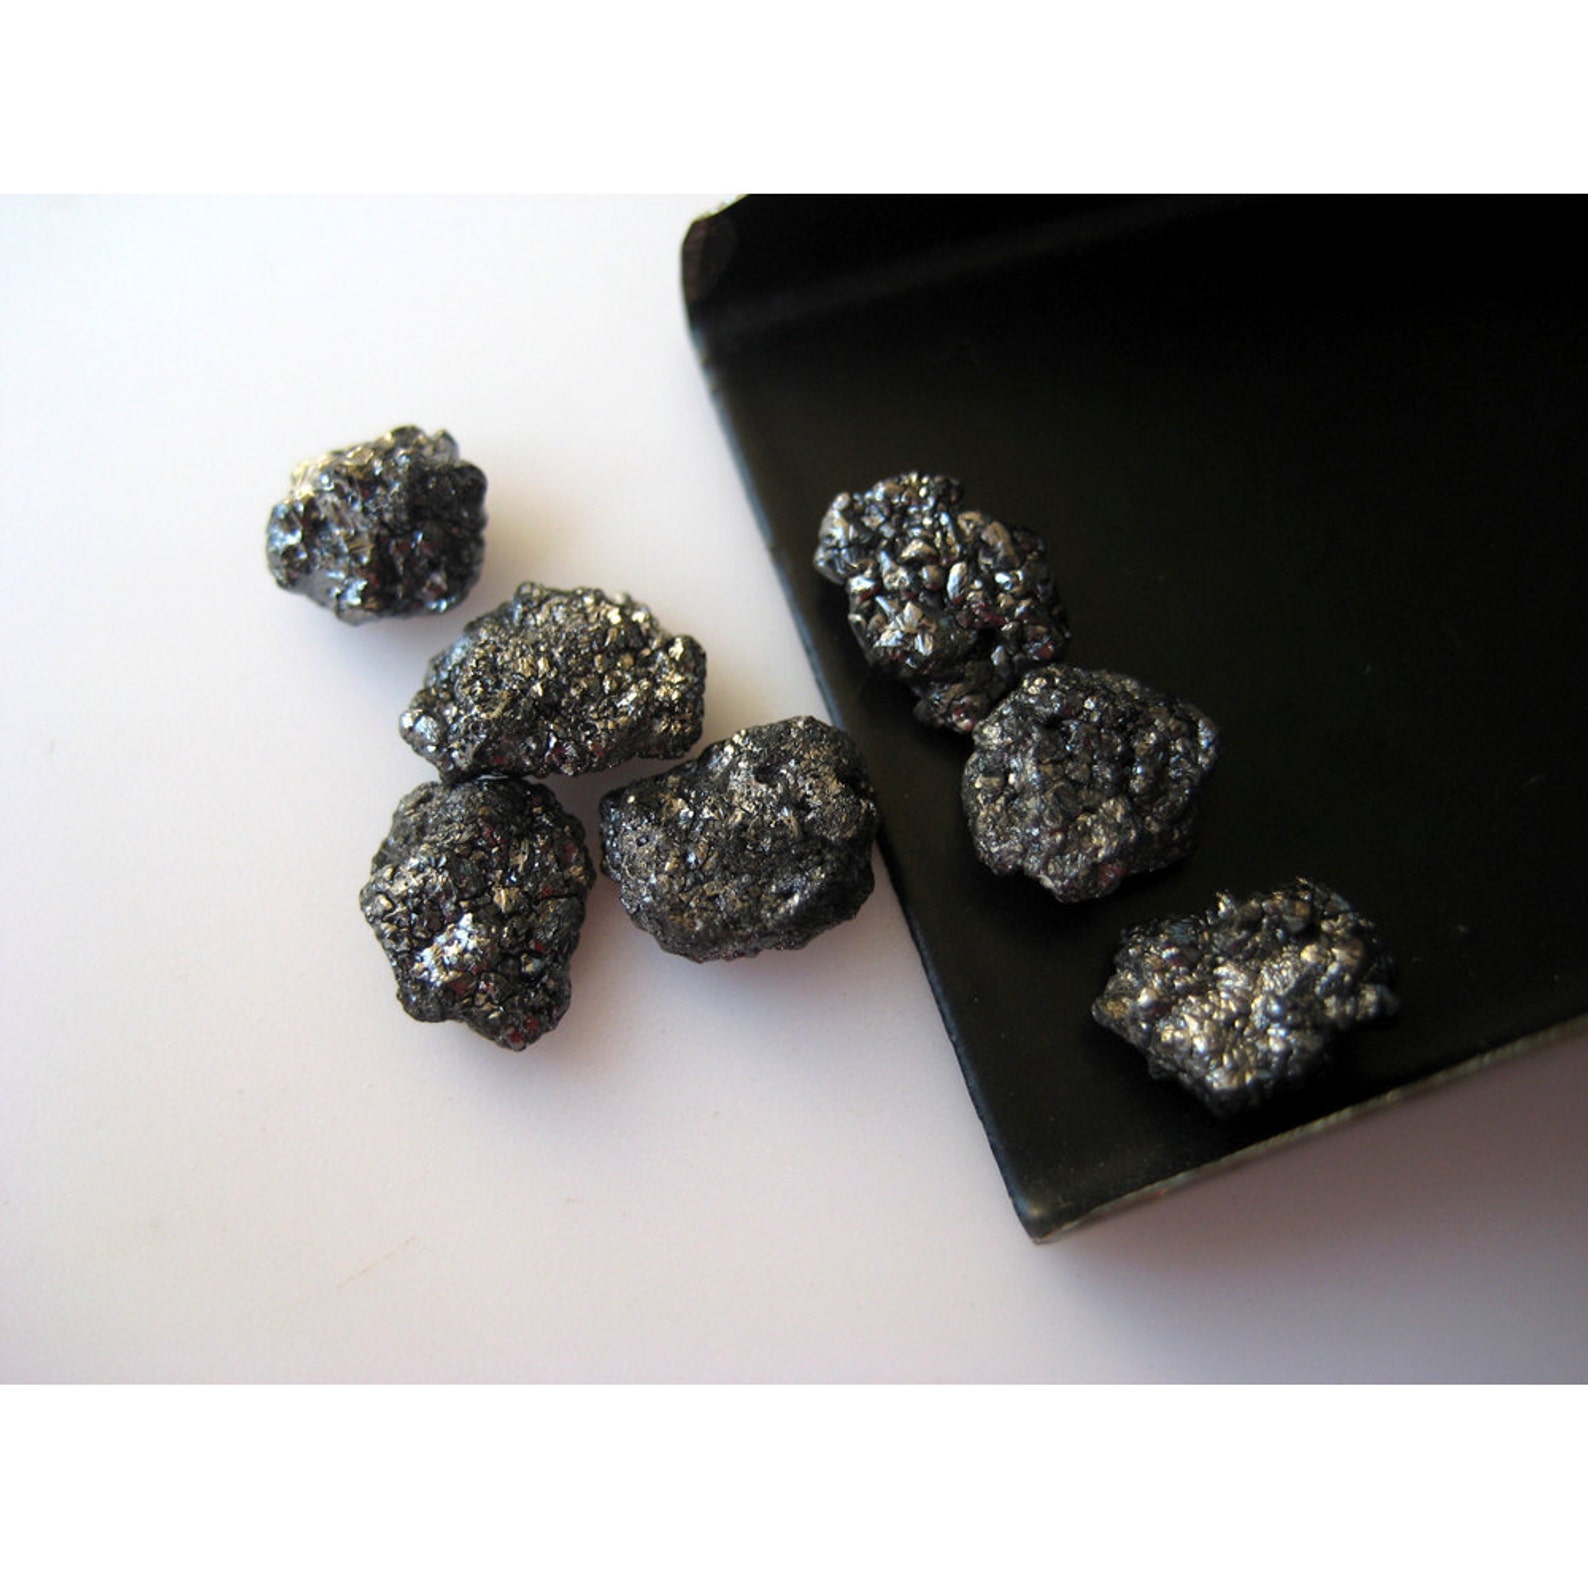 Дикость неограненные алмазы. Карбонадо обработанный. Черный Алмаз необработанный.